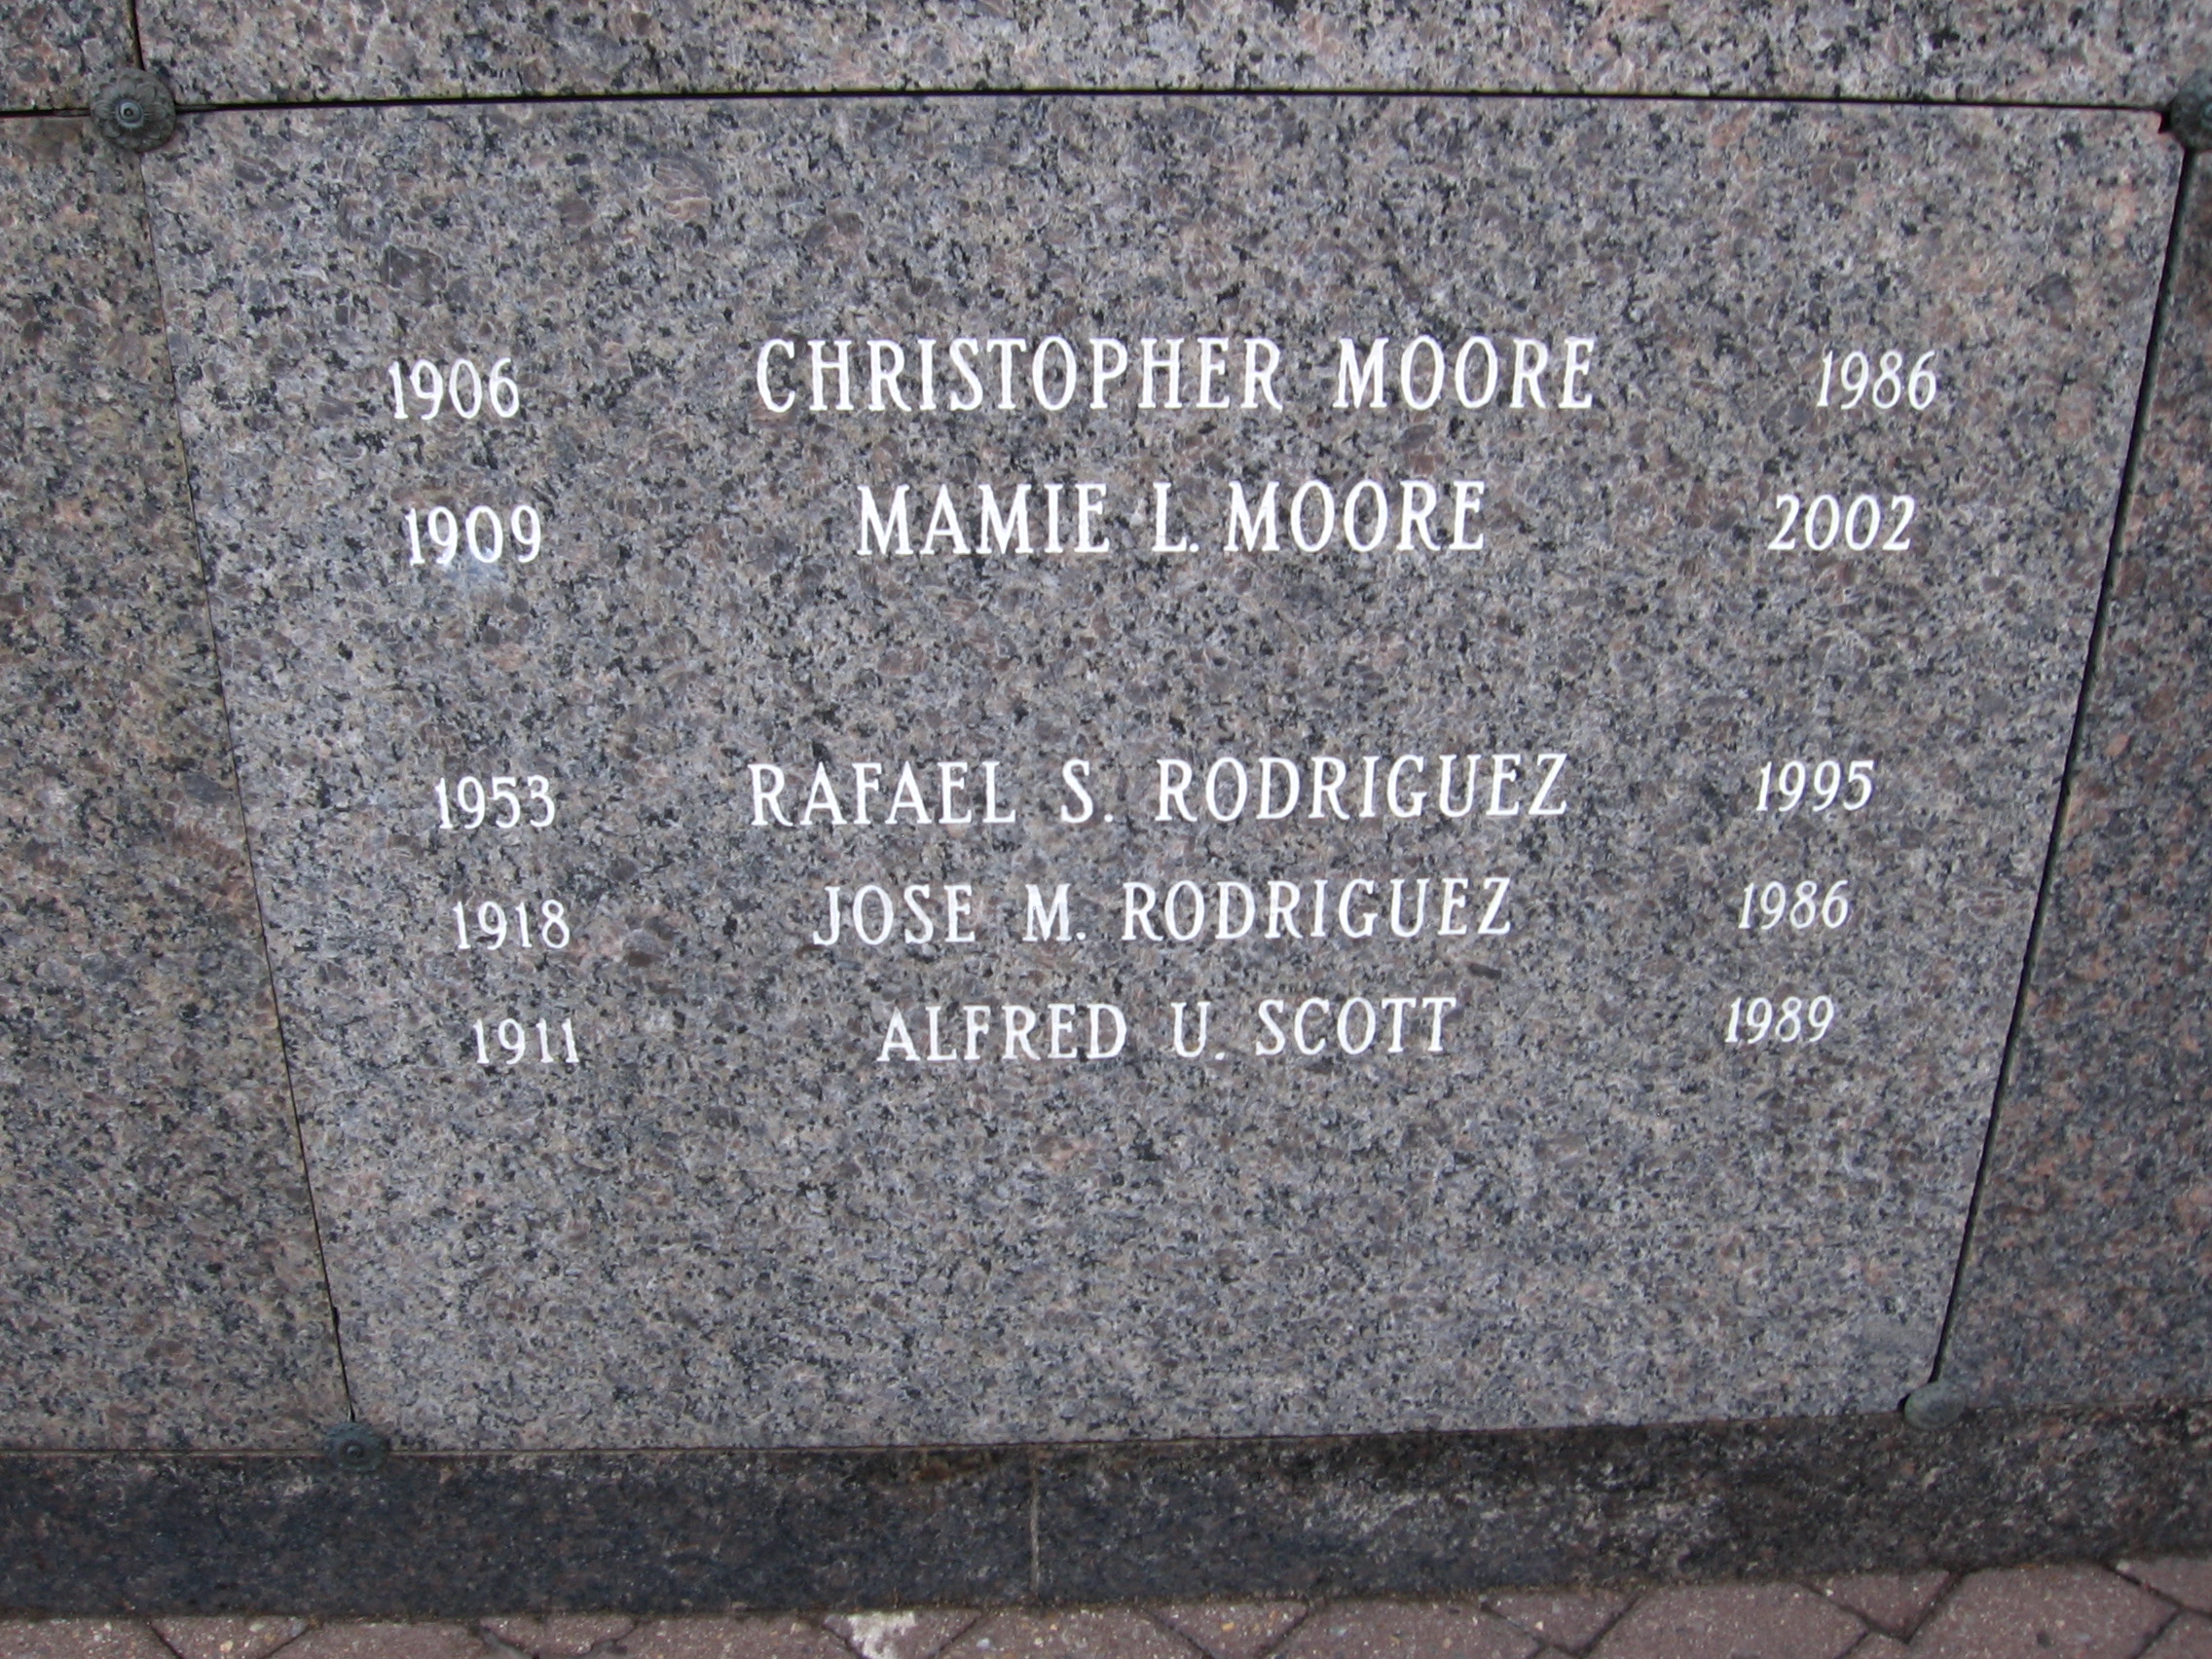 Mamie L Moore